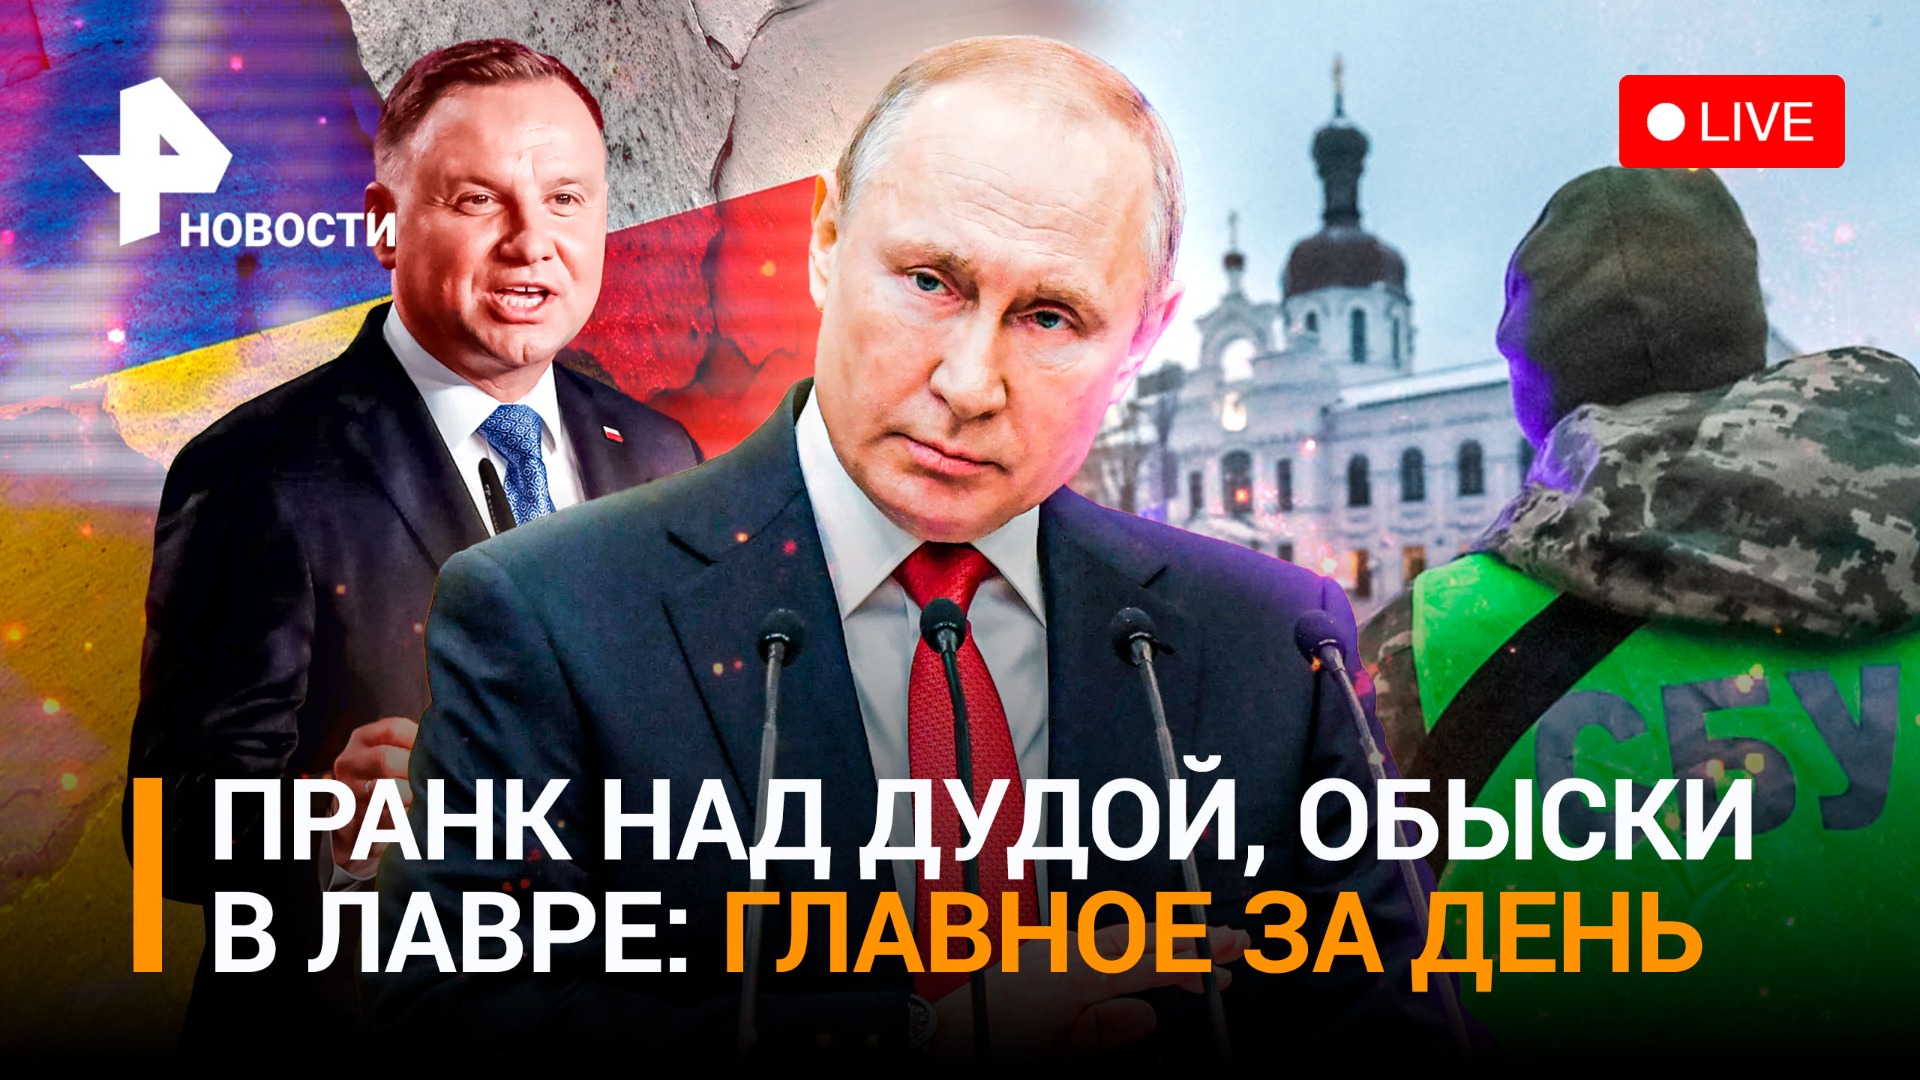 Обыски СБУ в Киево-Печерской лавре / Польша не хочет войны с Россией / ГЛАВНОЕ ЗА ДЕНЬ 